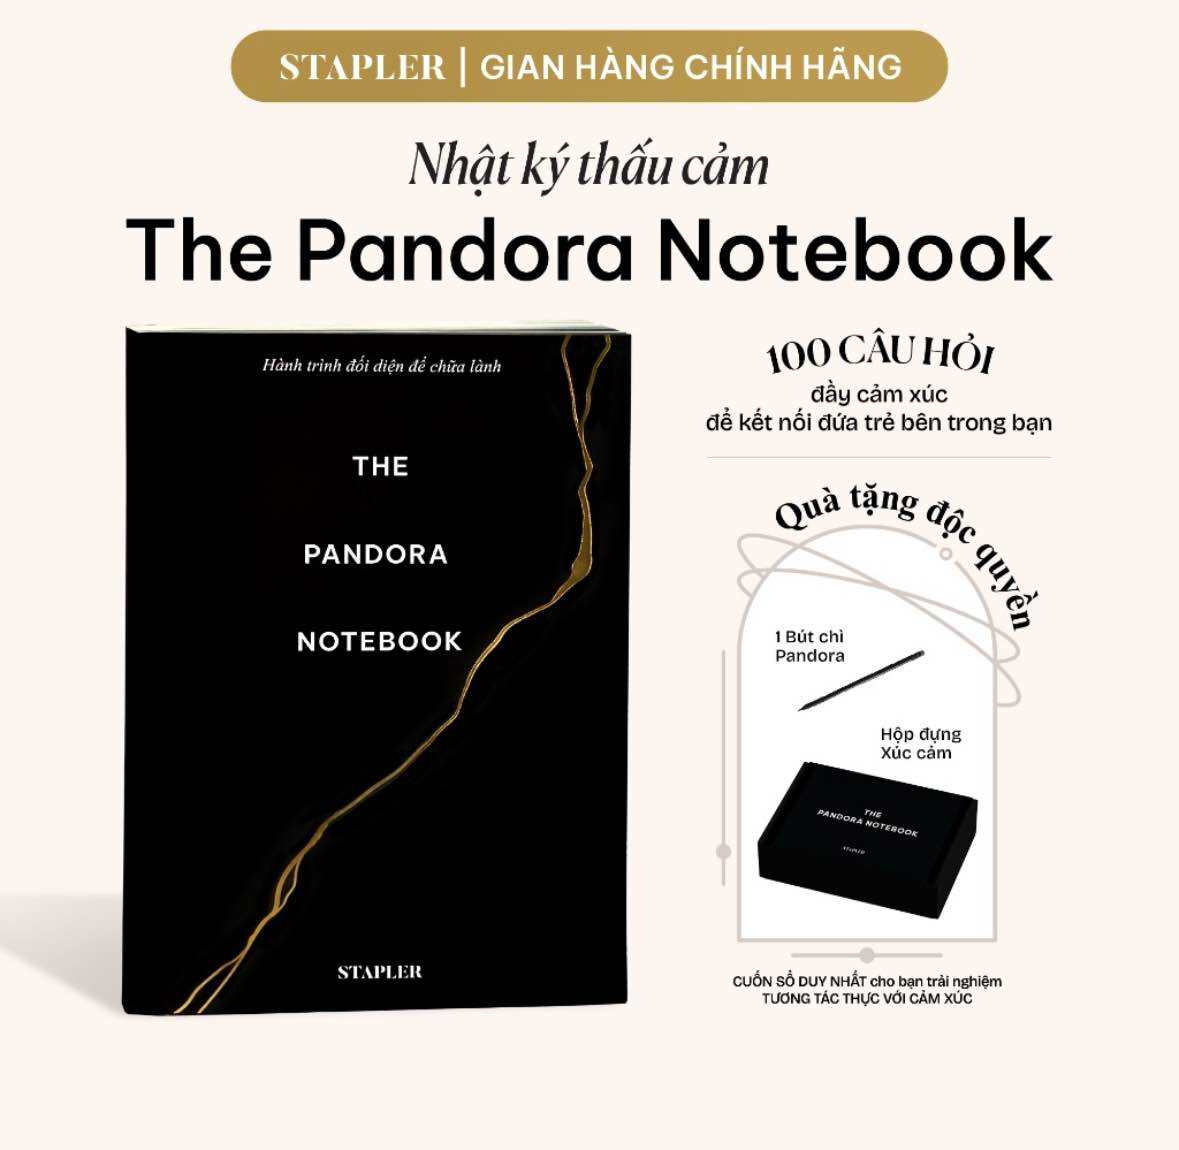 Sách - Sổ Nhật Ký Thấu Cảm Pandora STAPLER, The Pandora Notebook